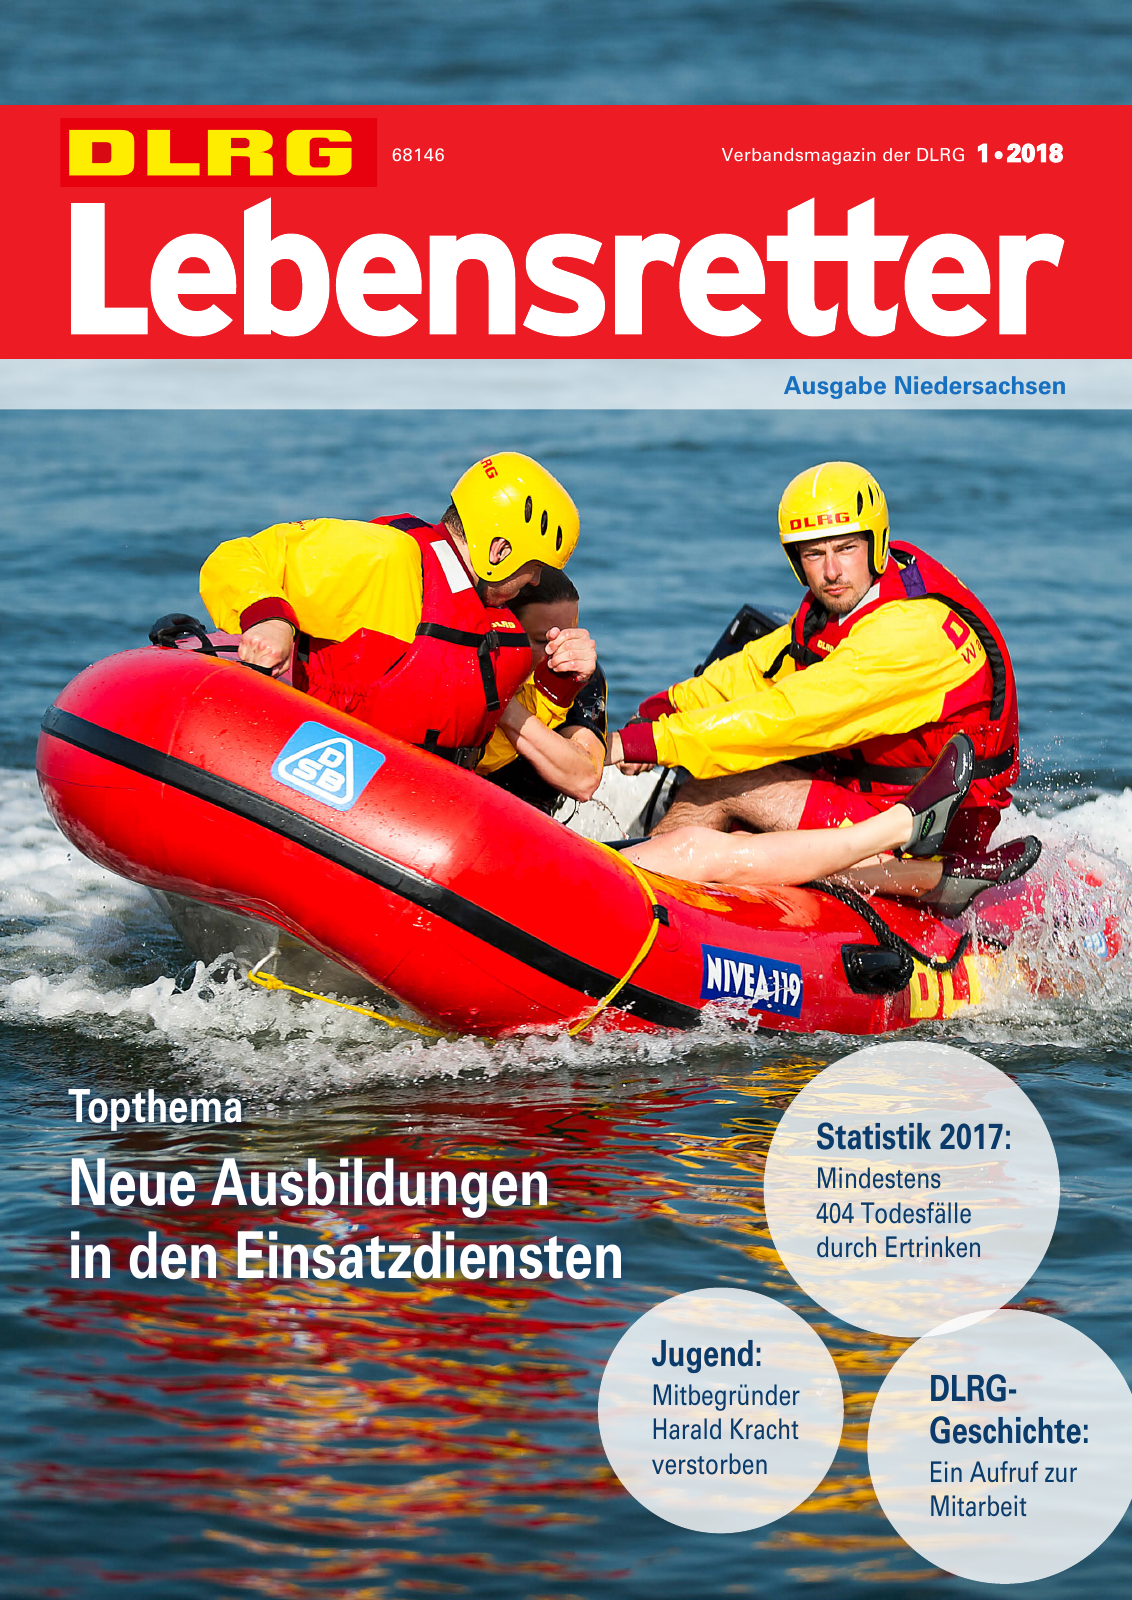 Vorschau Lebensretter 1/2018 - Regionalausgabe Niedersachsen Seite 1